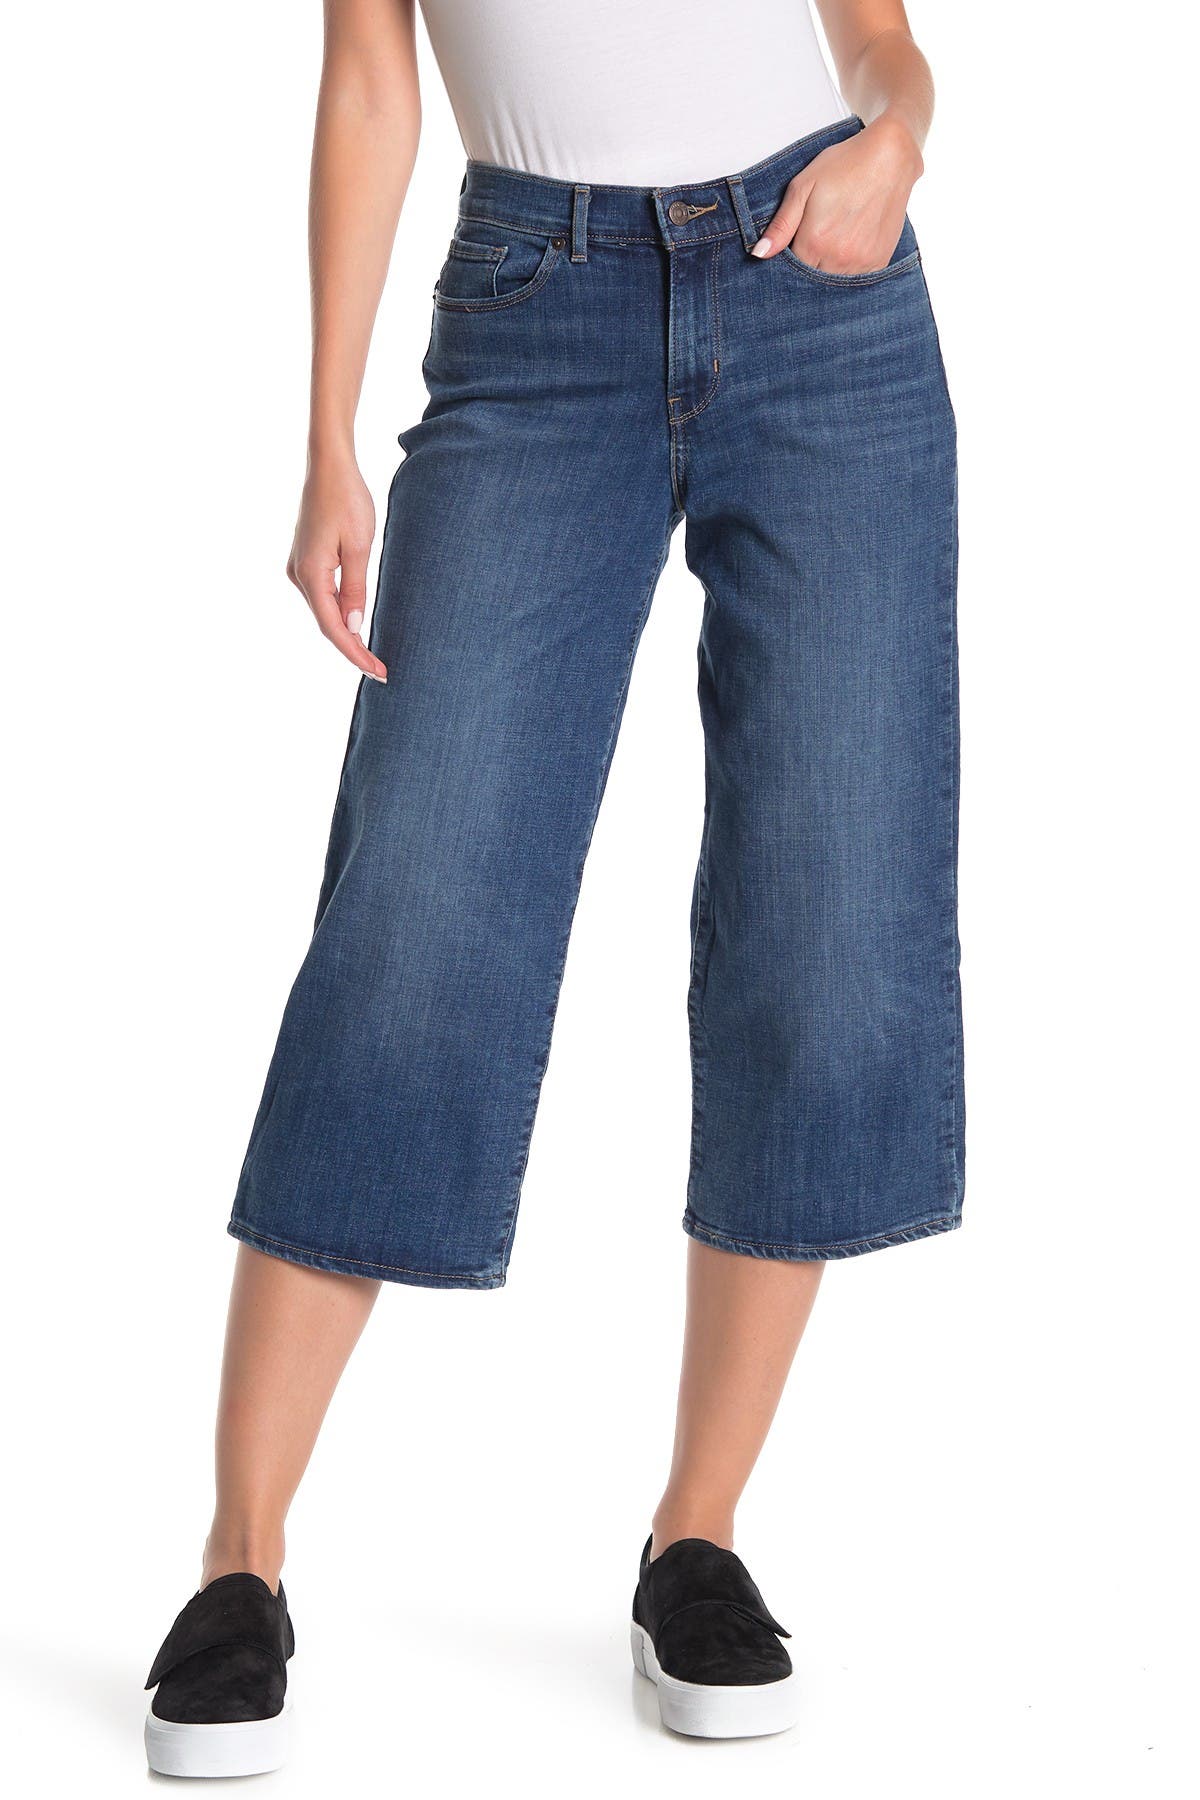 levi's classic crop jeans